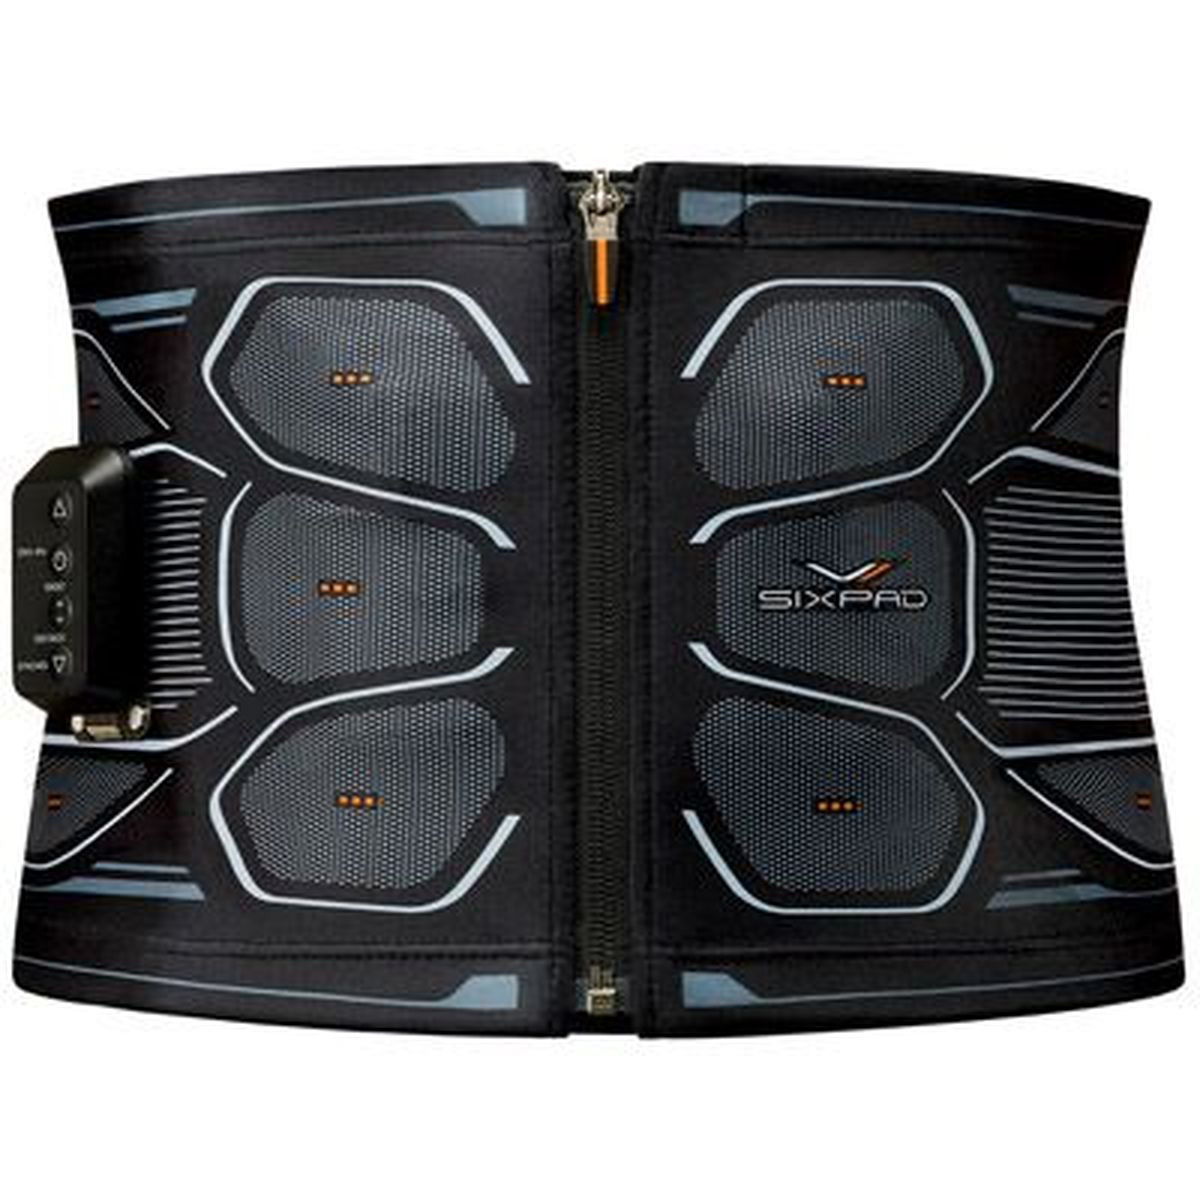 SIXPAD Powersuit Core Belt シックスパッド パワースーツ コアベルト Lサイズ